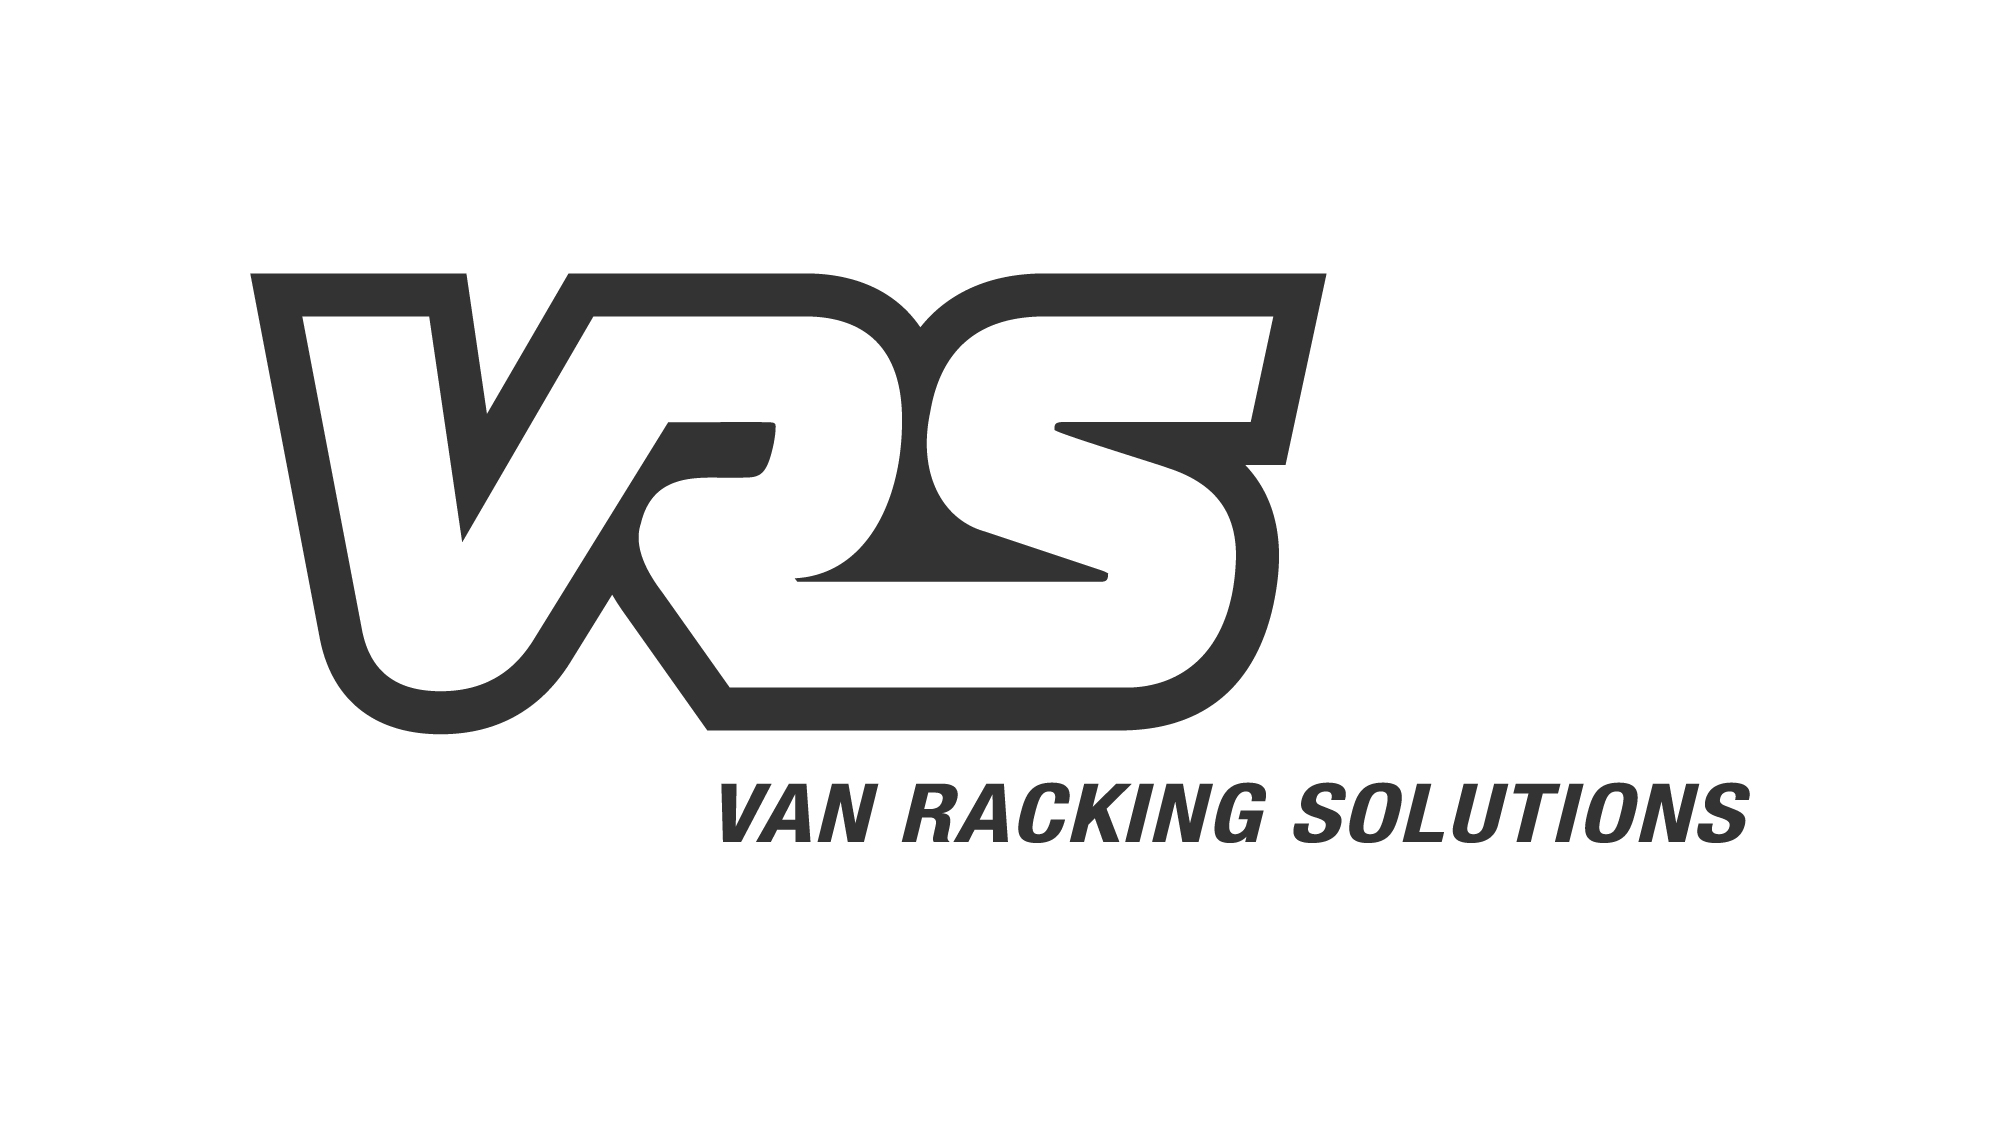 Van Racking Solutions